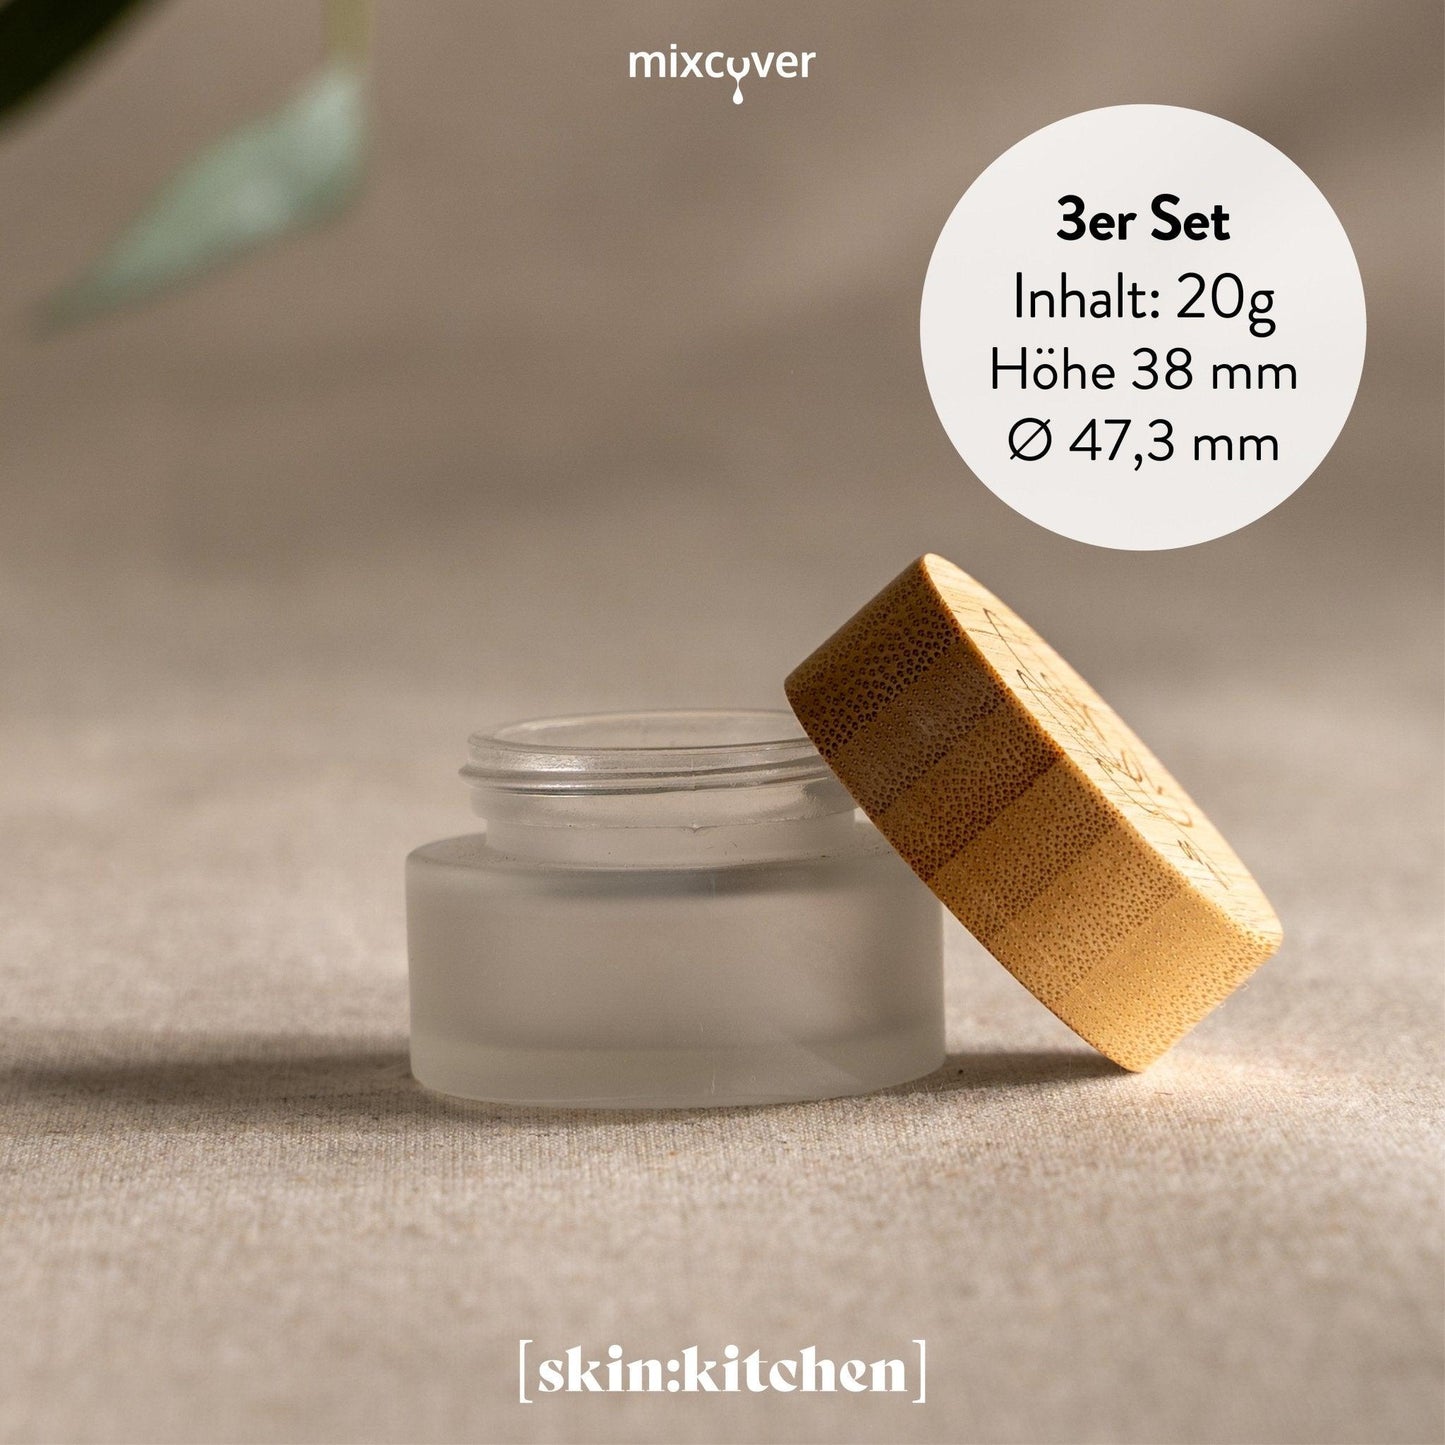 skinkitchen Glastiegel mit Bambusdeckel & Gravur für selbstgemachte Kosmetik 3er Set 20g "Frosted" - Mixcover - skin:kitchen